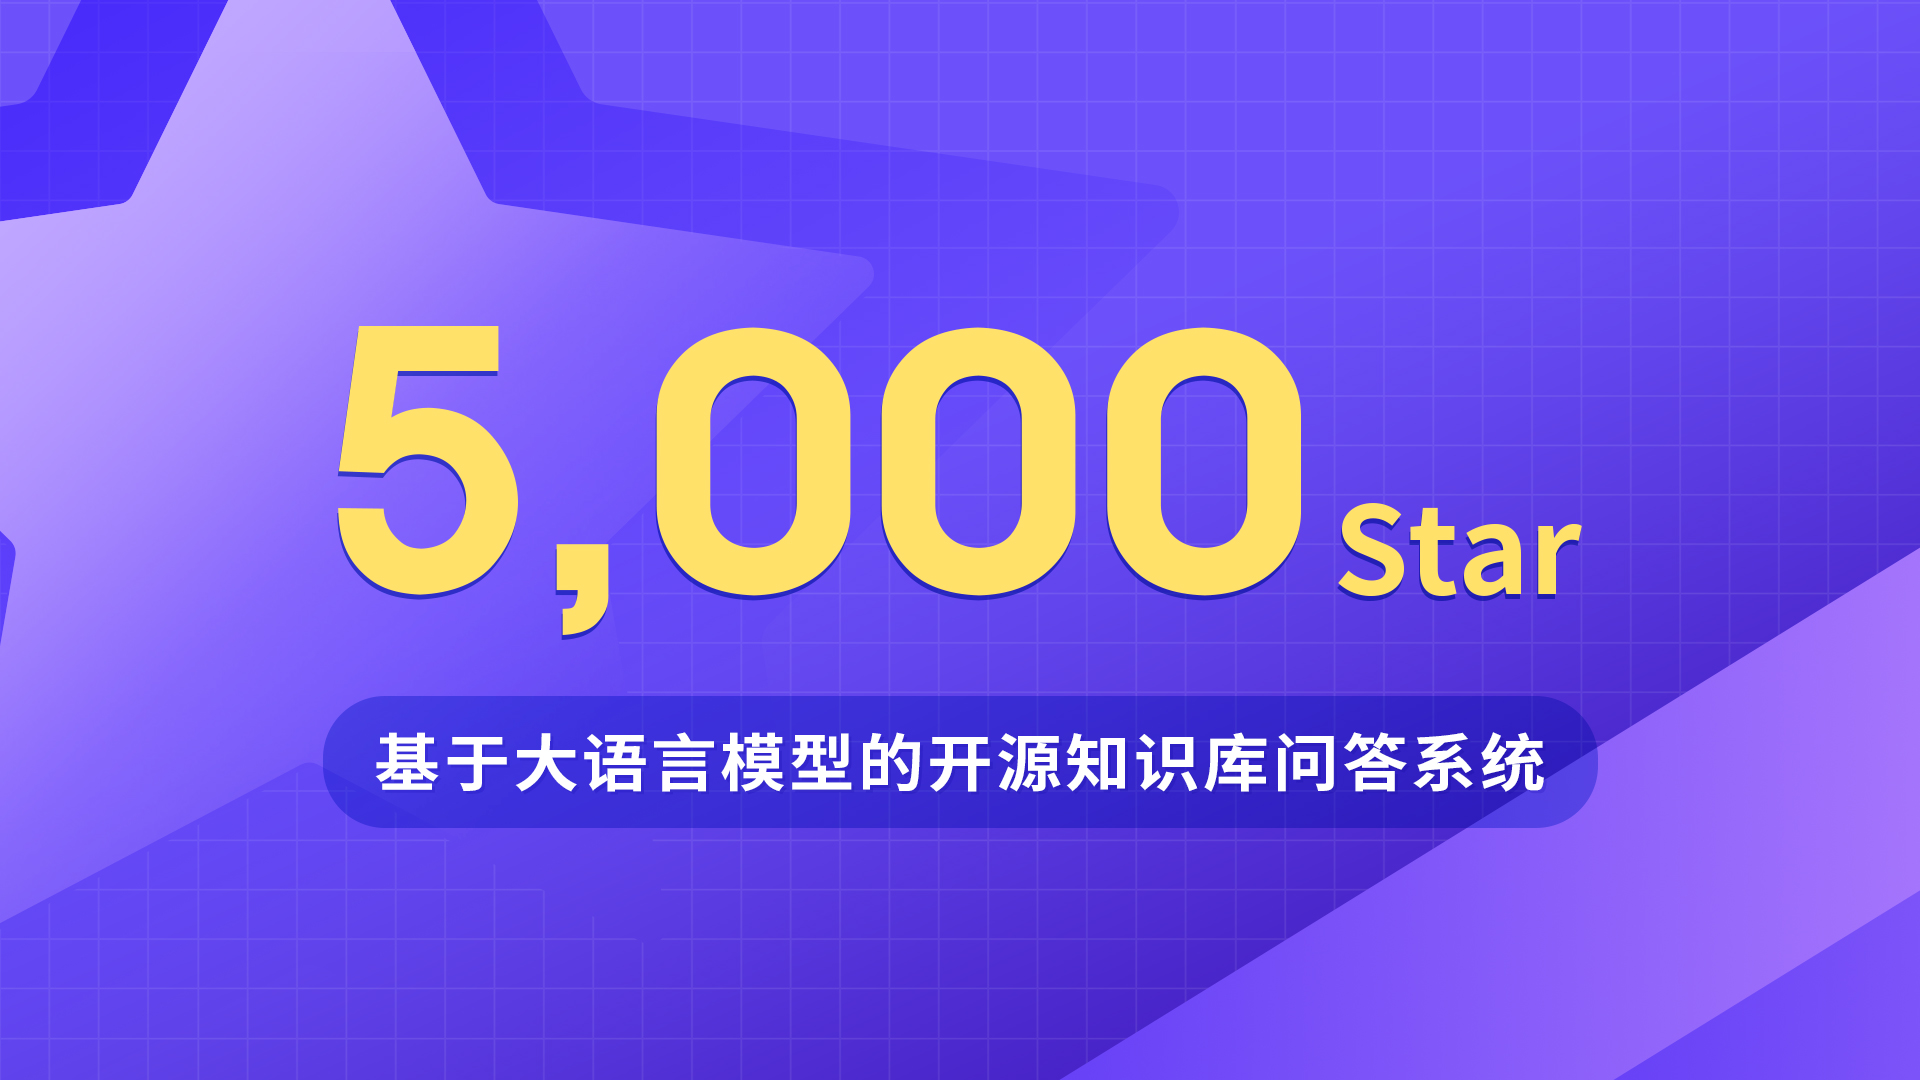 基于大语言模型的开源知识库问答系统MaxKB GitHub Star数量突破5,000个！